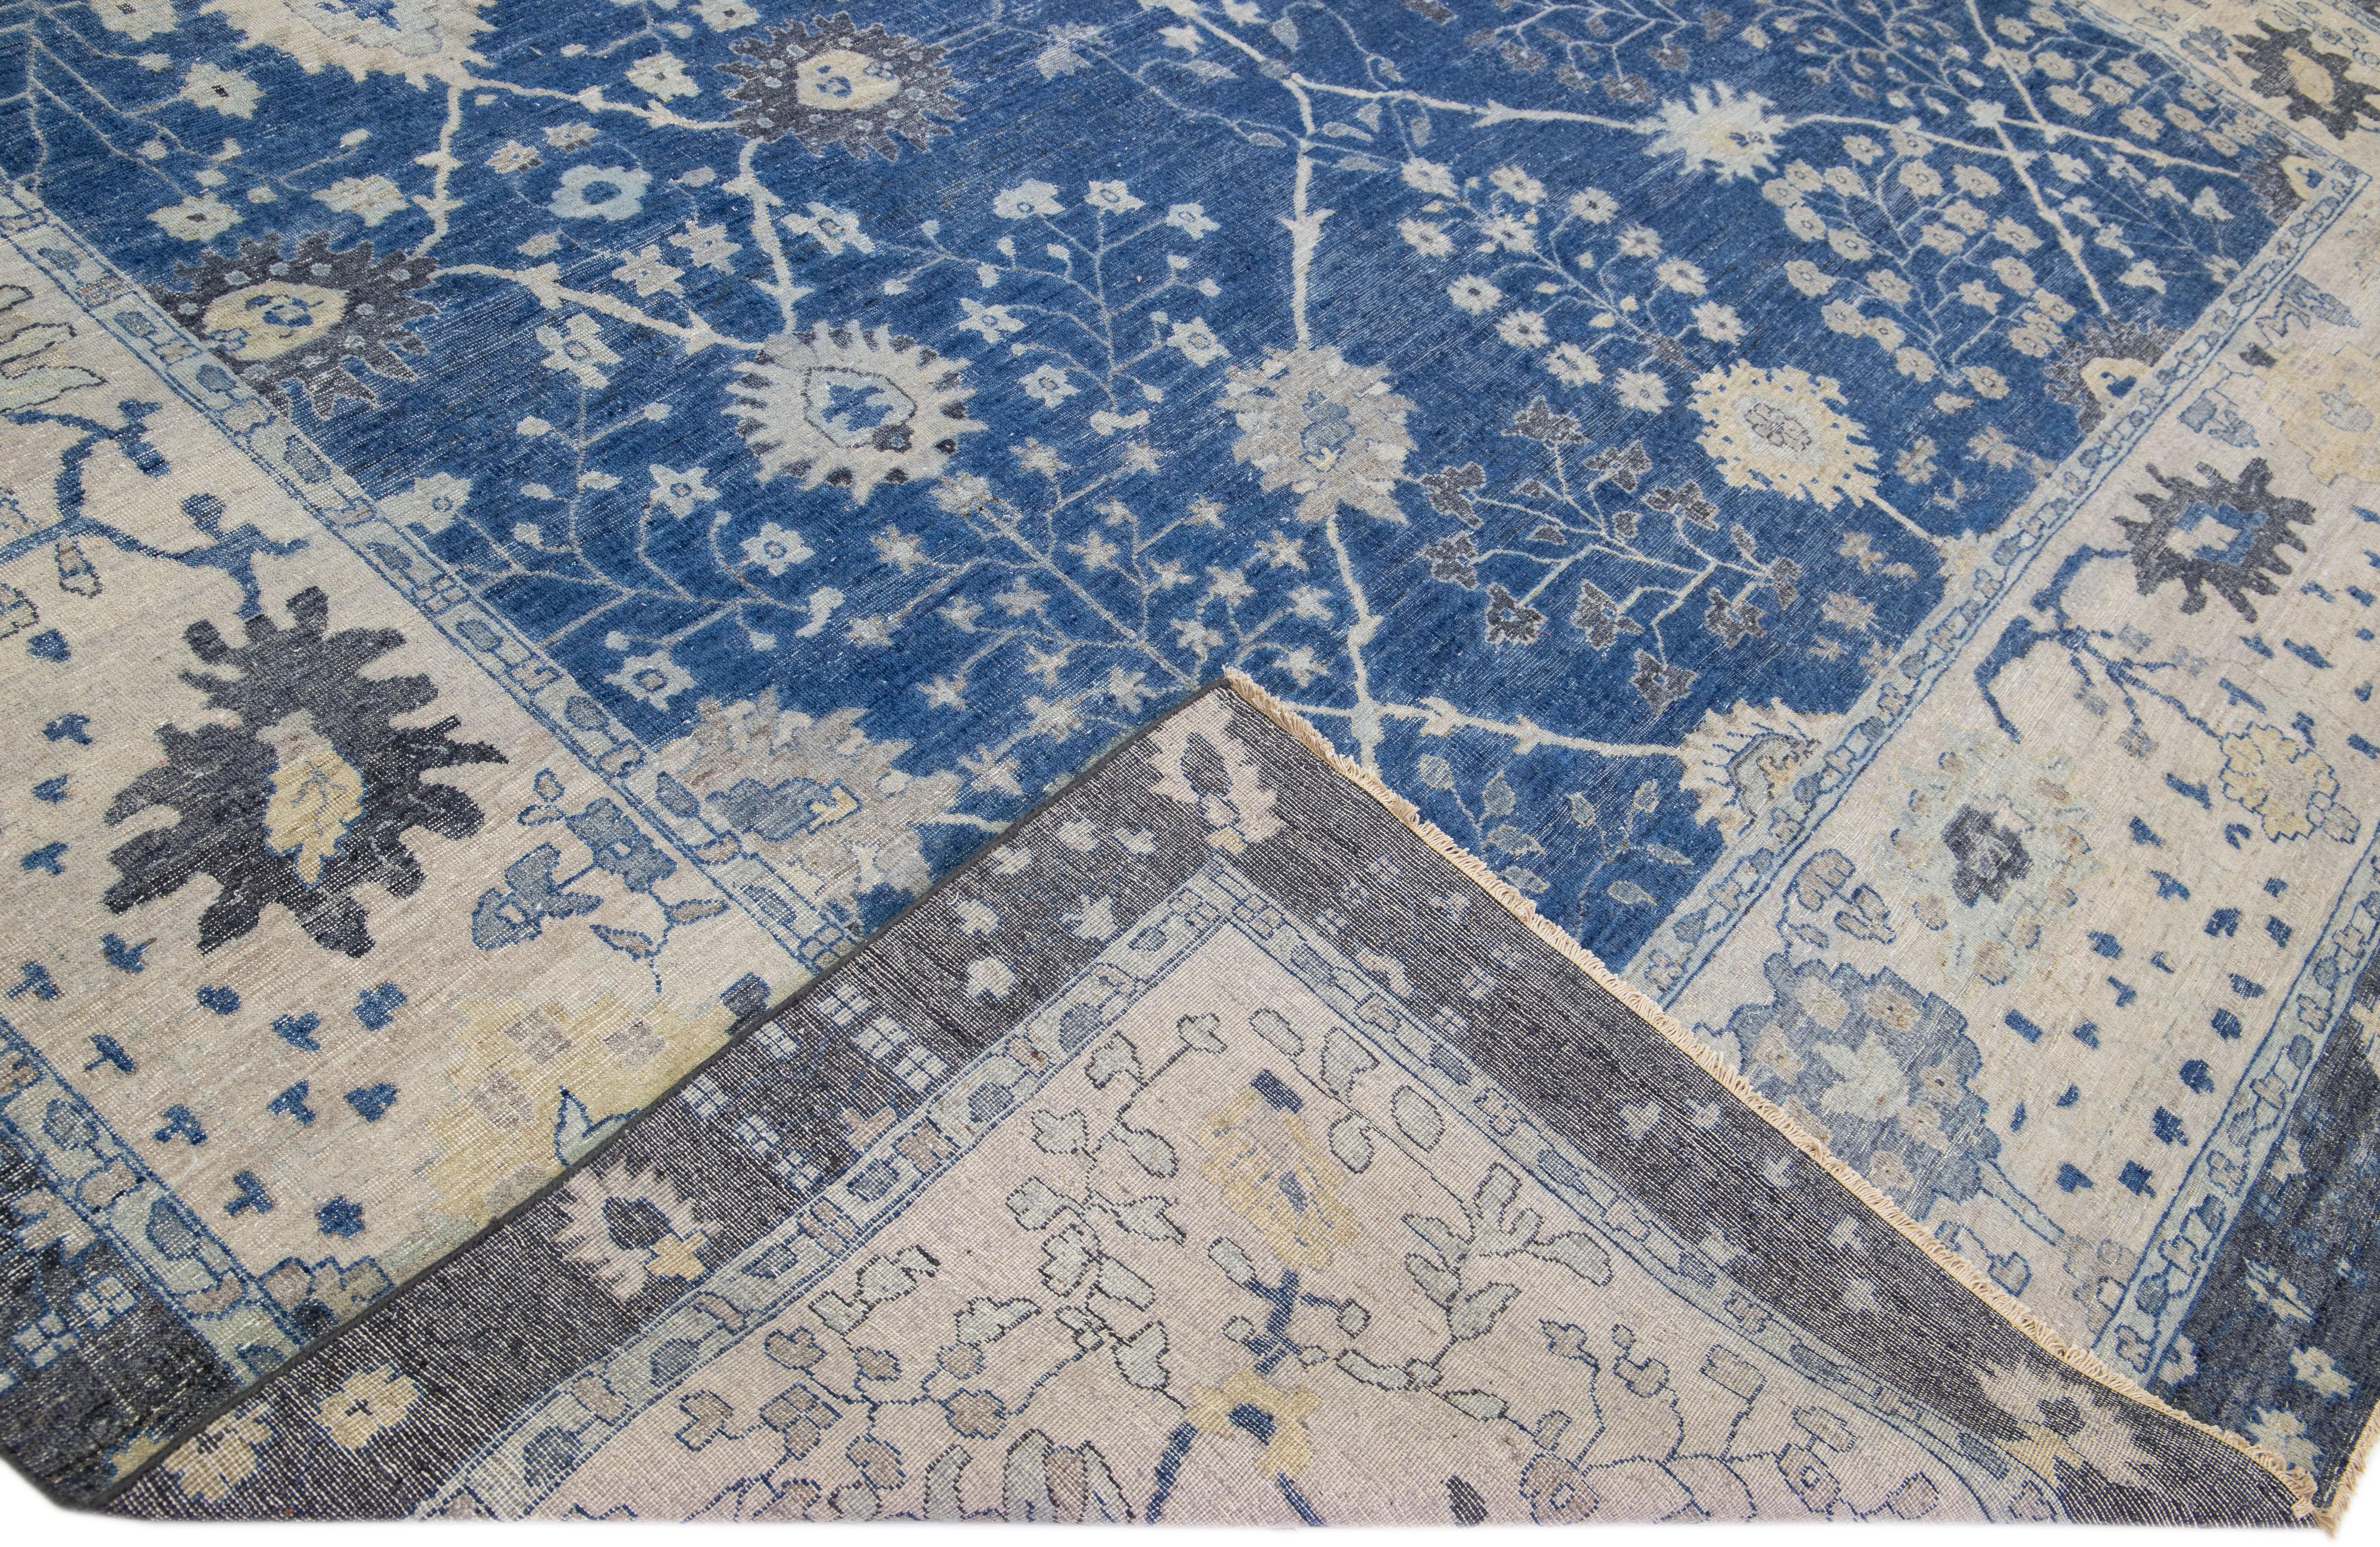 Die Artisan-Linie von Apadana ist eine Neuinterpretation antiker Teppiche, die auf elegante Weise eine auffällige antike Ästhetik in einen Raum bringt. Diese Teppichserie ist ausgesprochen einzigartig und definiert das Aussehen eines antiken